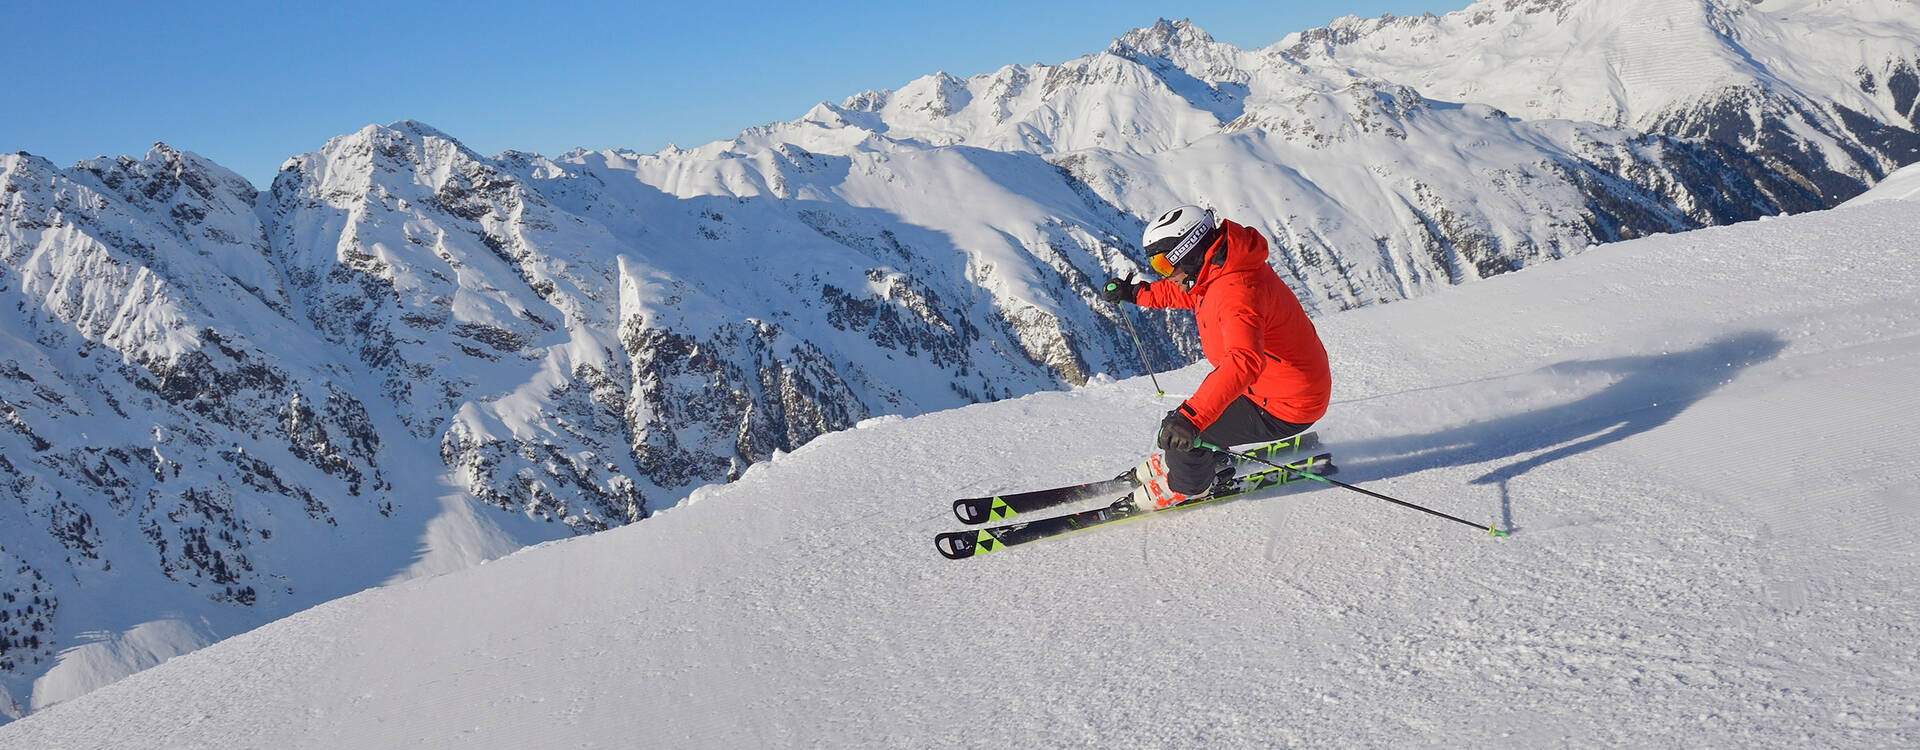 Grenzenloses Skivergnügen Wintersport für jedermann Skifahren in Ischgl